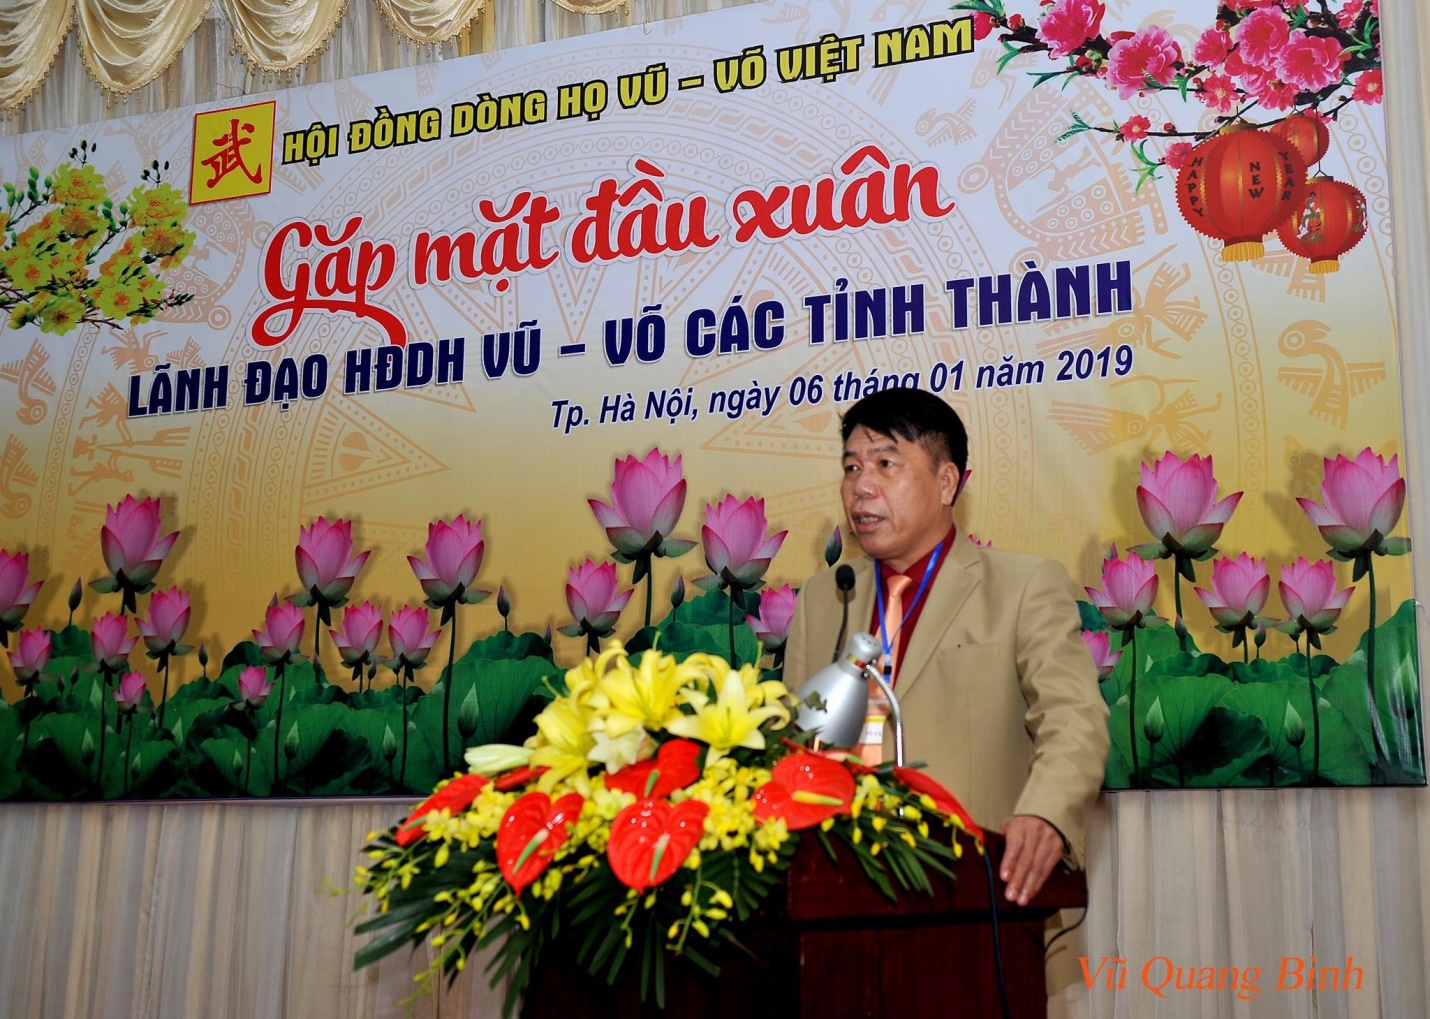 Ông Vũ Văn Trường, Chủ tịch Hội đồng quản trị kiêm Tổng giám đốc Công ty CP đầu tư – xây dựng Thiên Lộc phát biểu tại buổi Lễ
            